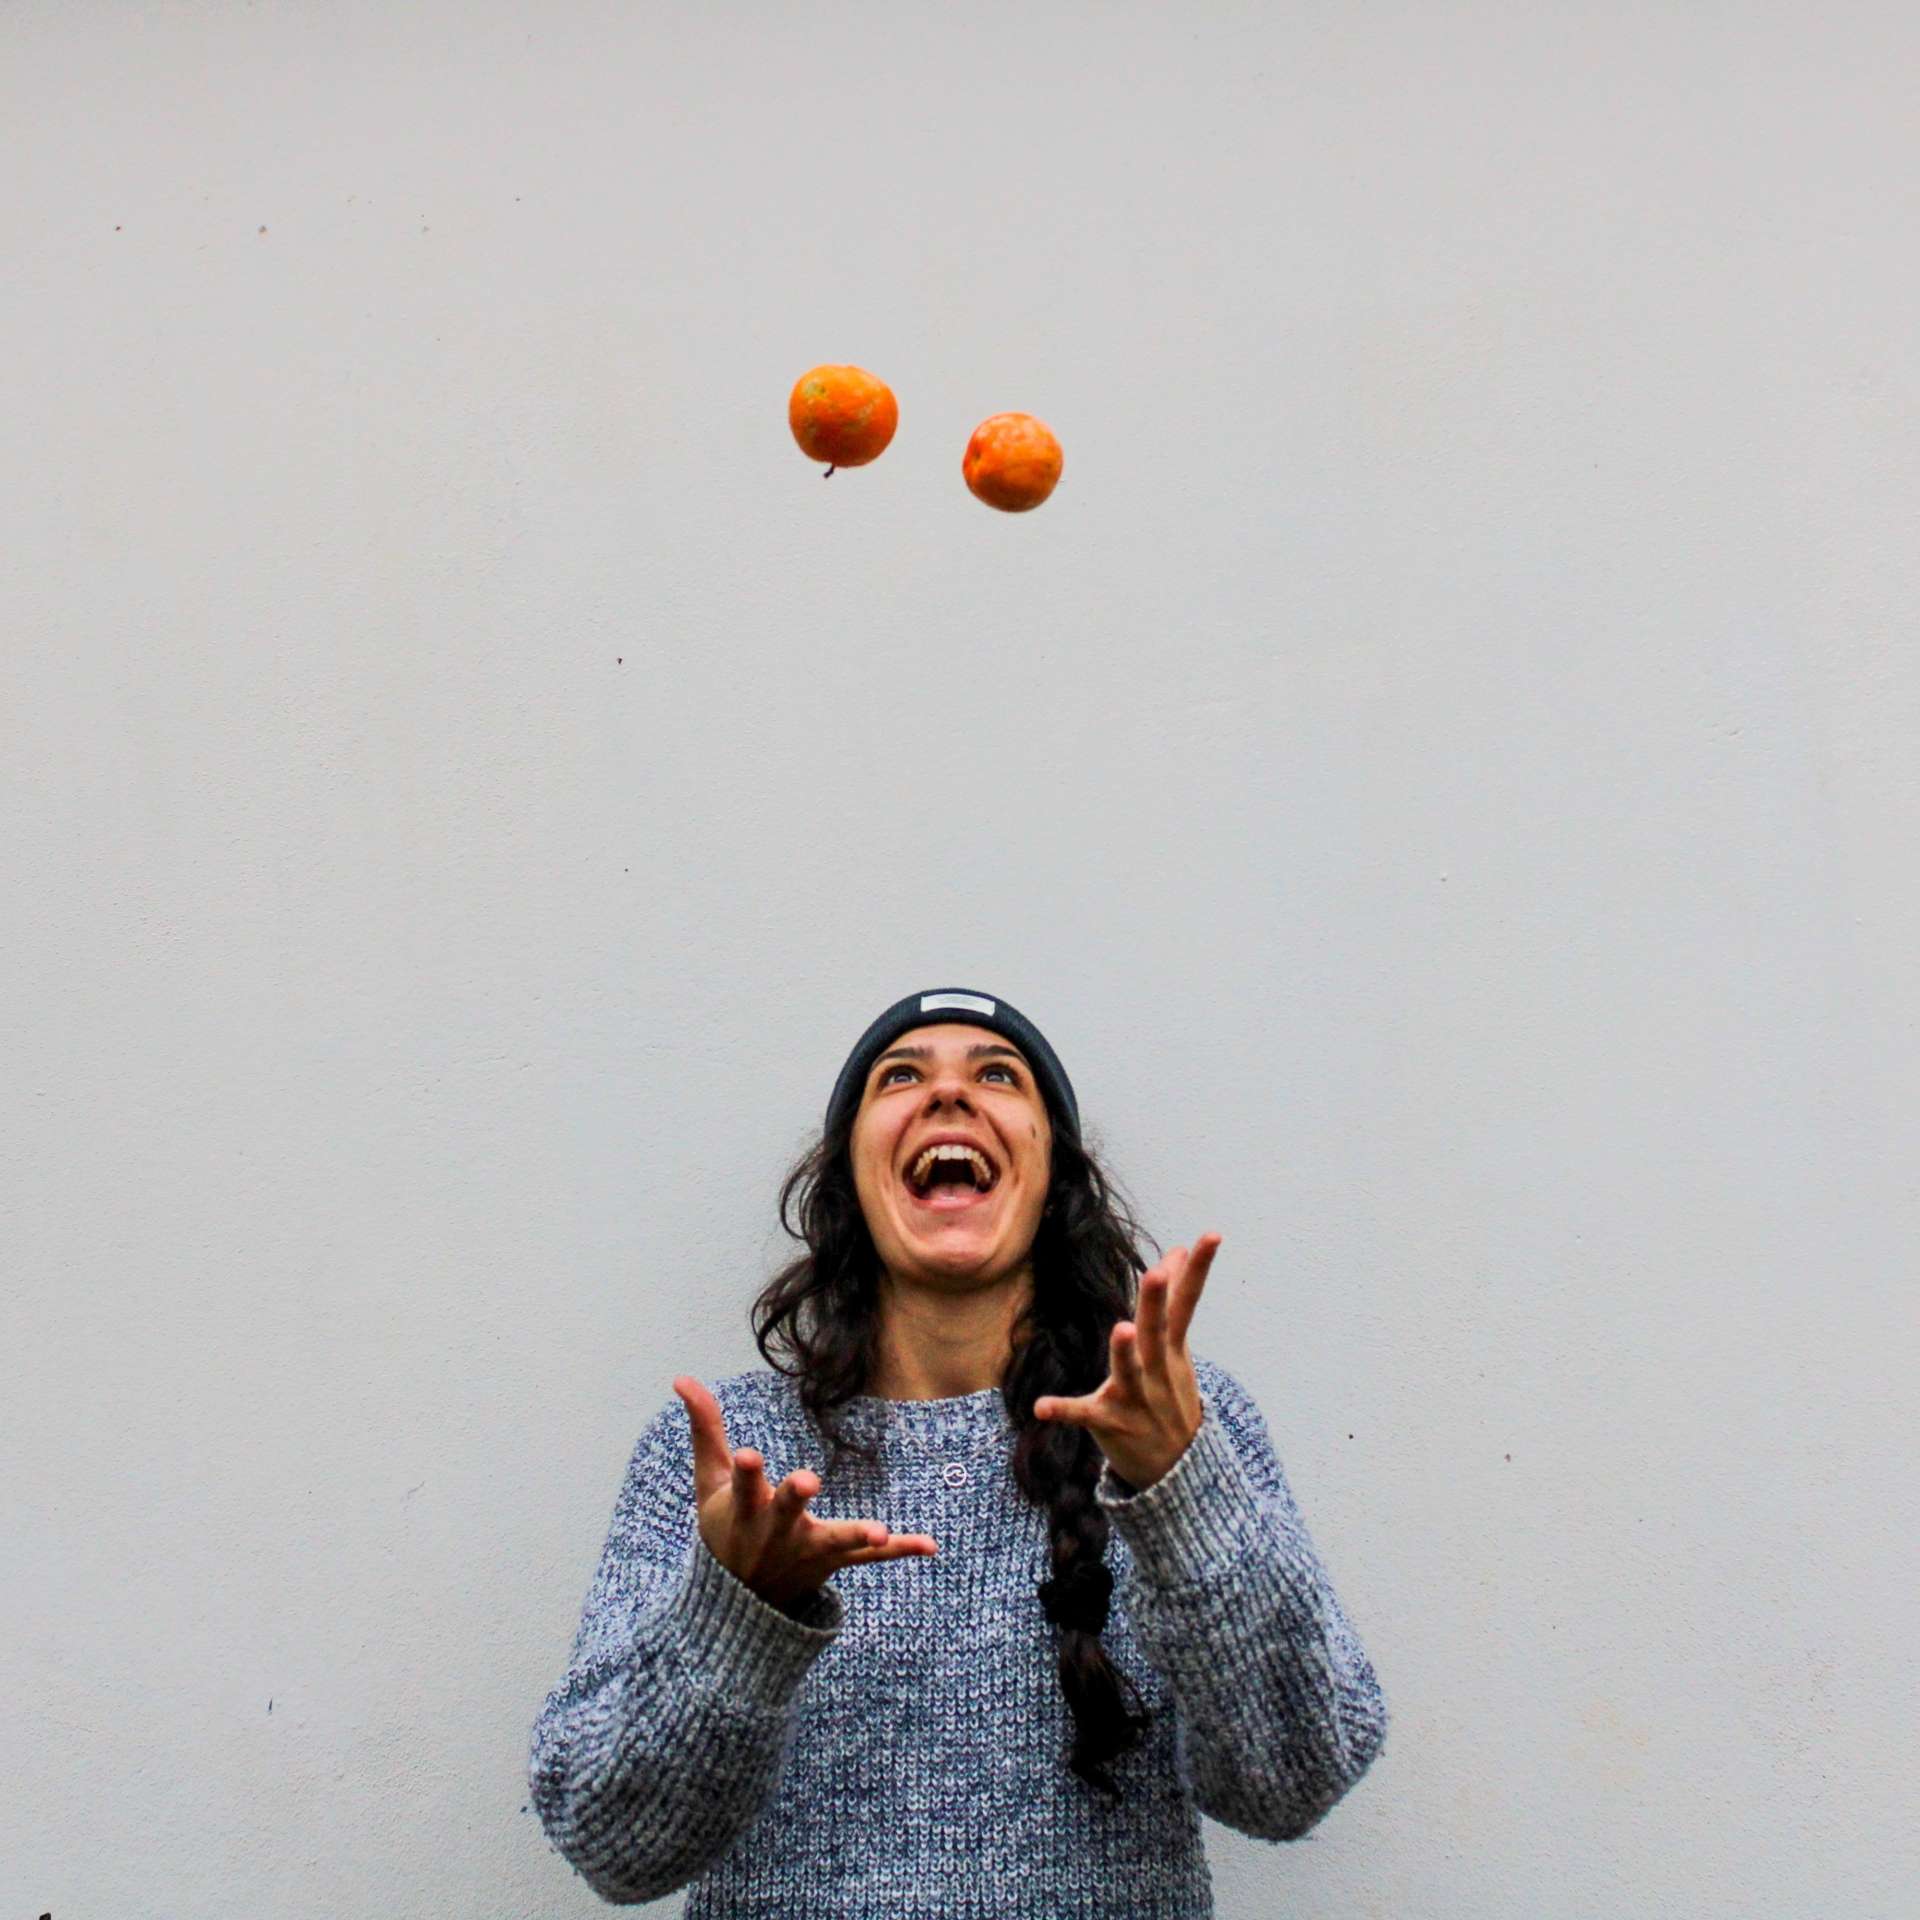 Une personne jongle avec des oranges